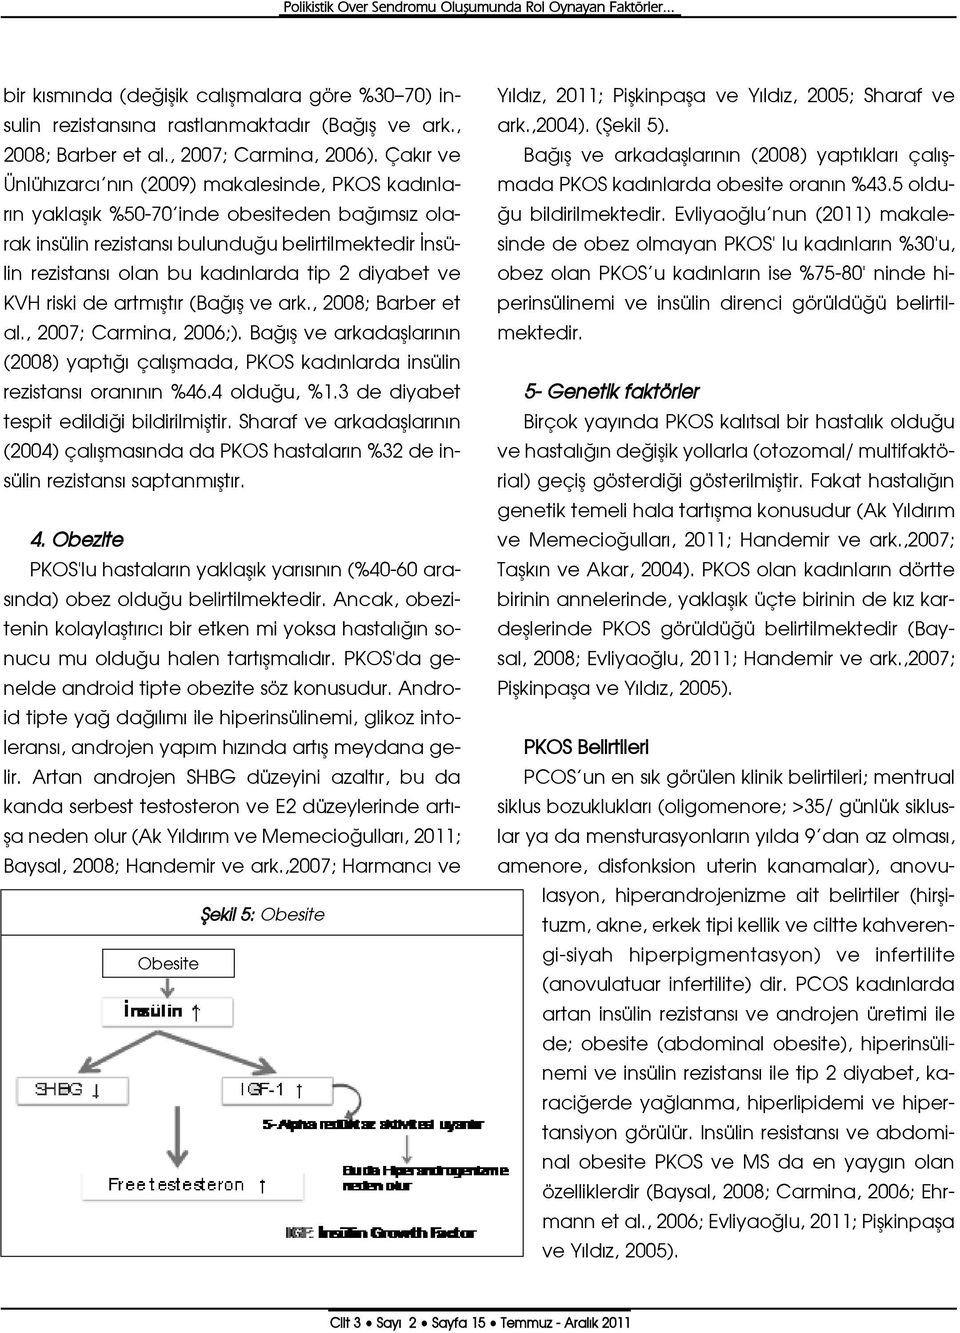 Çak r ve Ünlüh zarc n n (2009) makalesinde, PKOS kad nlar n yaklafl k %50-70 inde obesiteden ba ms z olarak insülin rezistans bulundu u belirtilmektedir nsülin rezistans olan bu kad nlarda tip 2